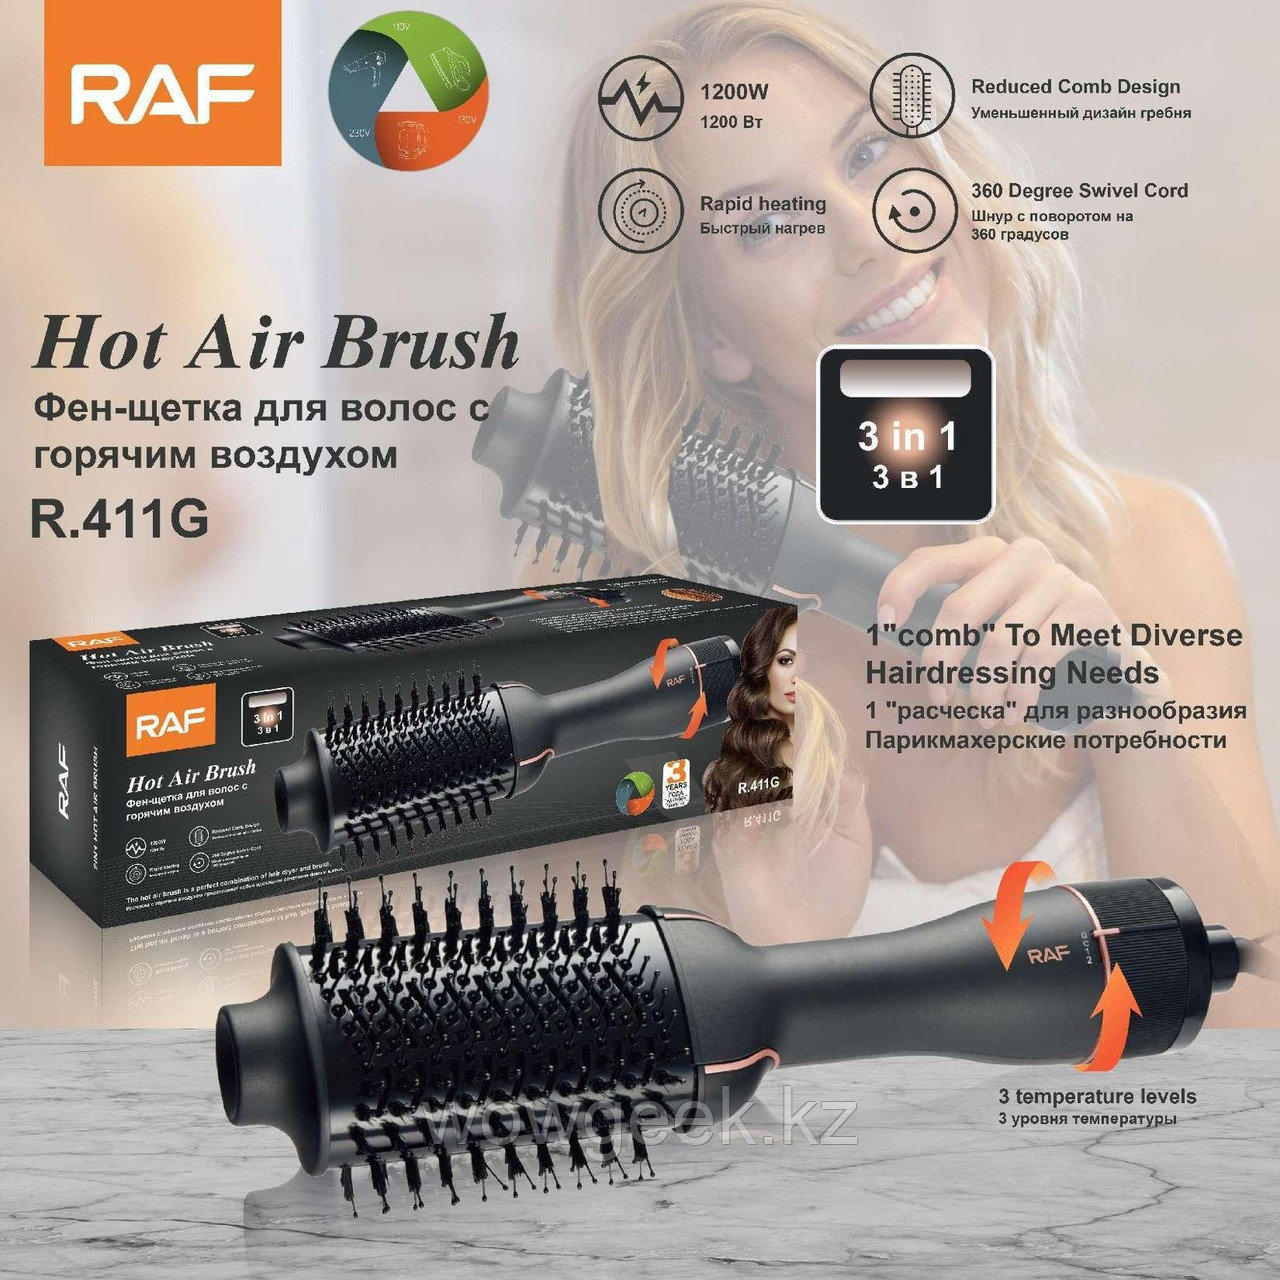 Фен щетка для волос с горячим воздухом RAF R. 411G